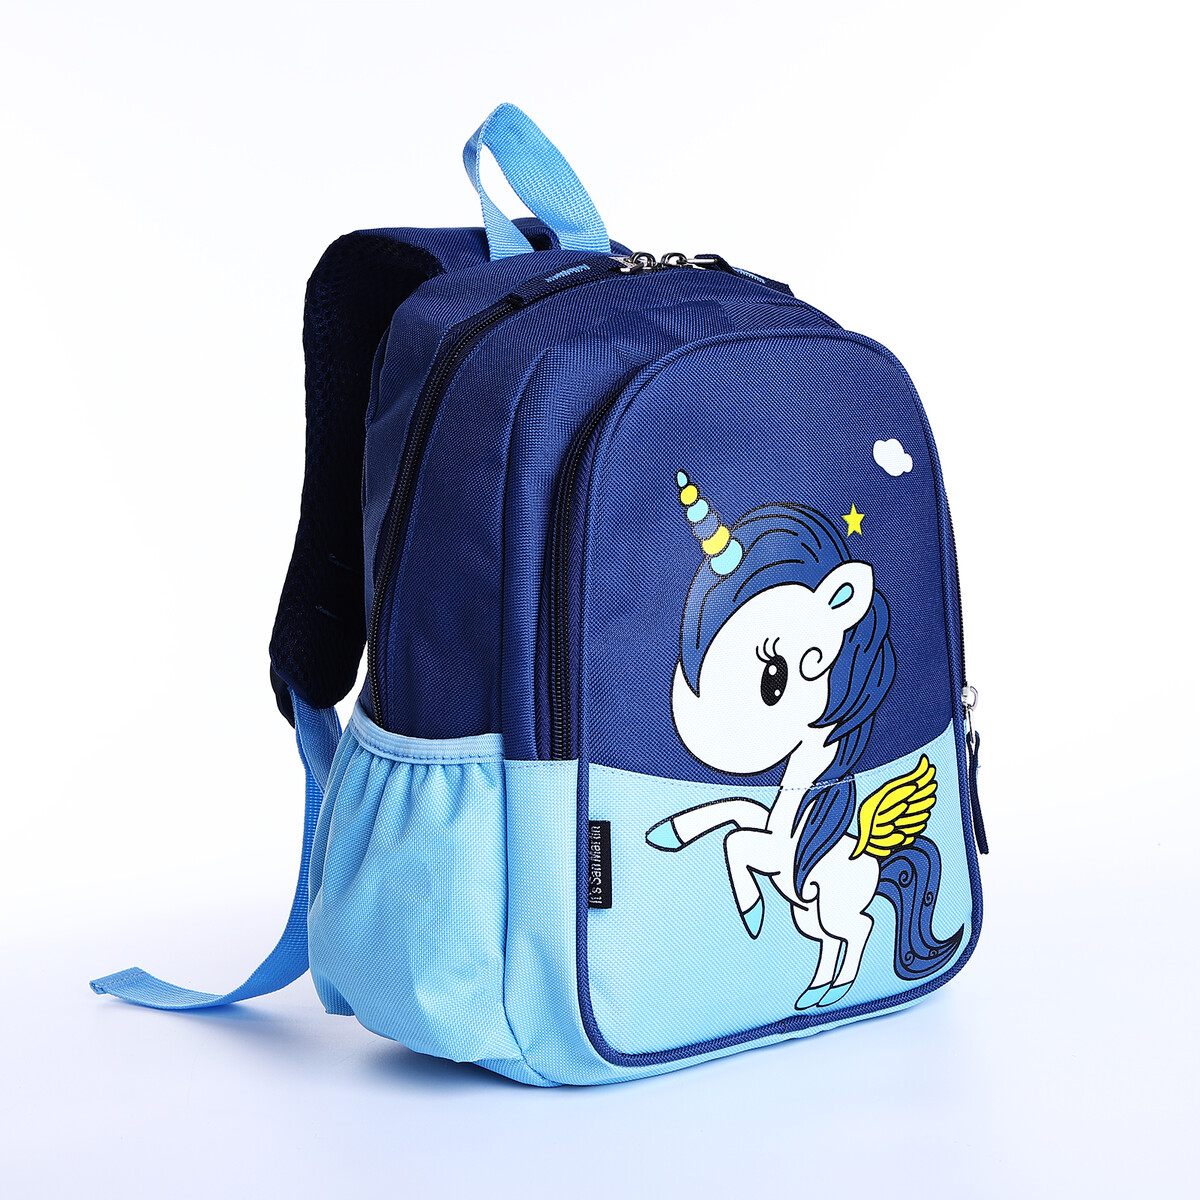 Рюкзак детский на молнии, наружный карман, цвет синий/голубой рюкзак на молнии textura наружный карман голубой